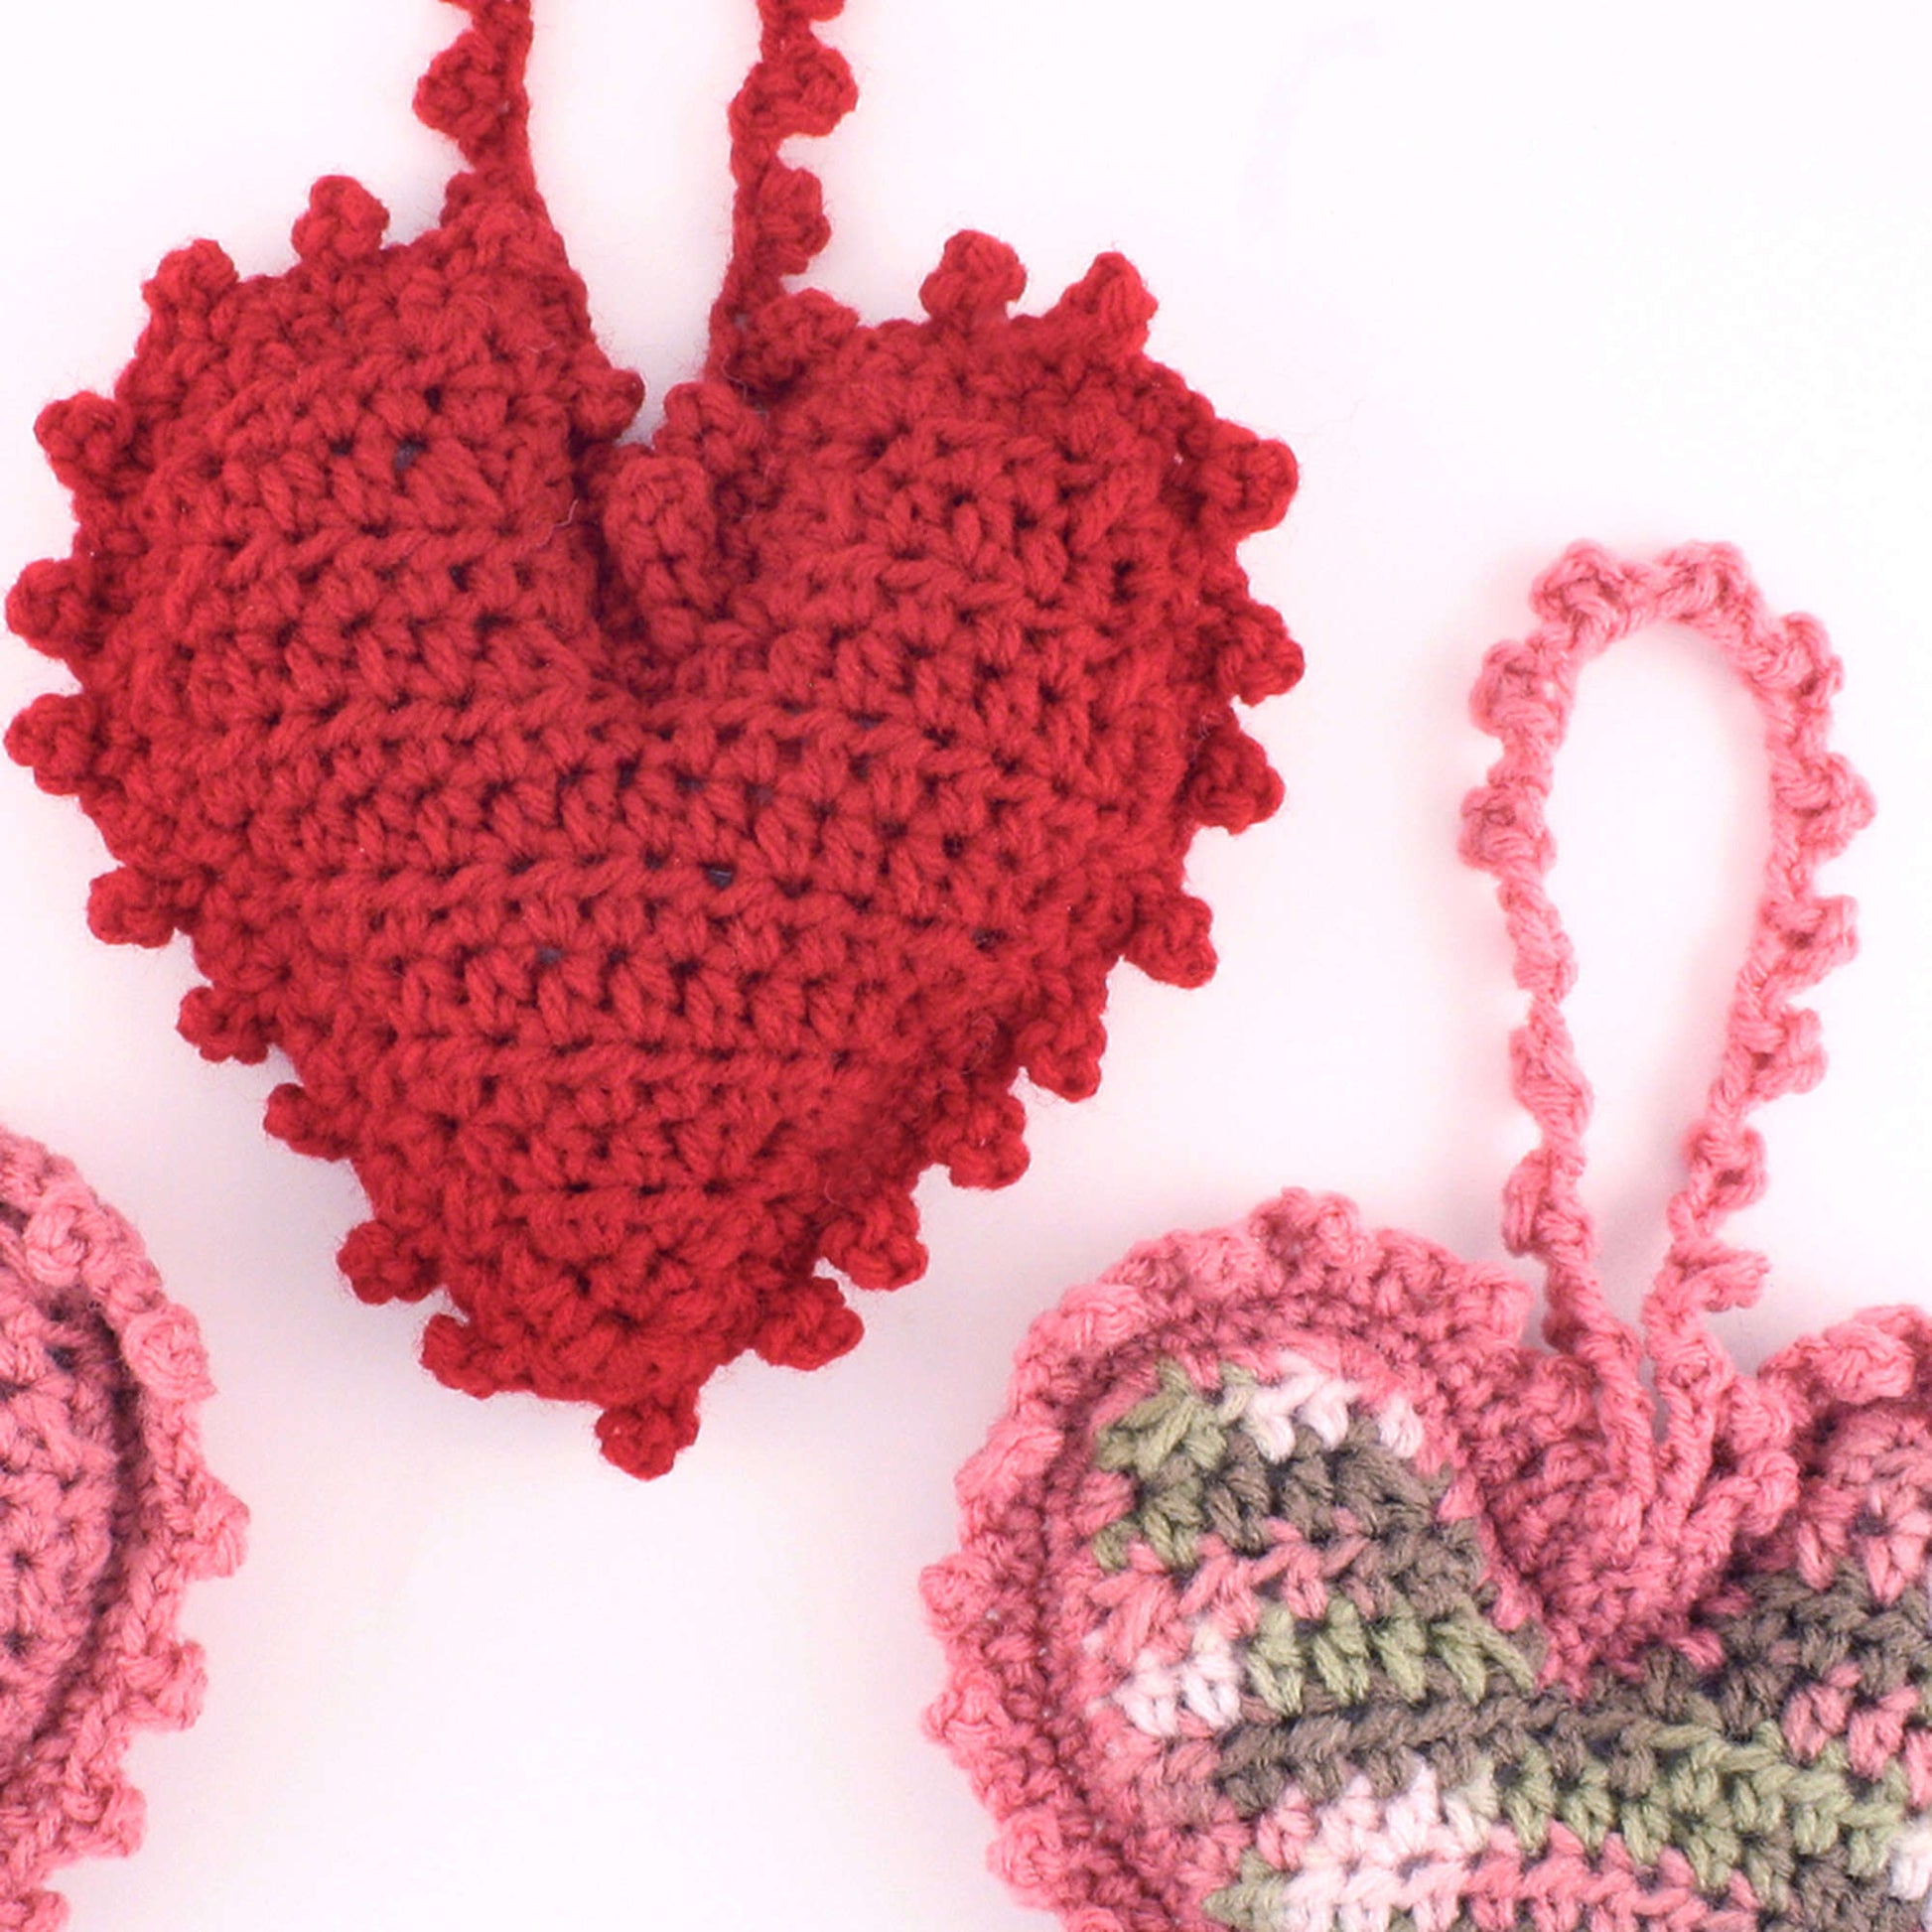 Free Red Heart Crochet Sweet Heart Sachet Pattern